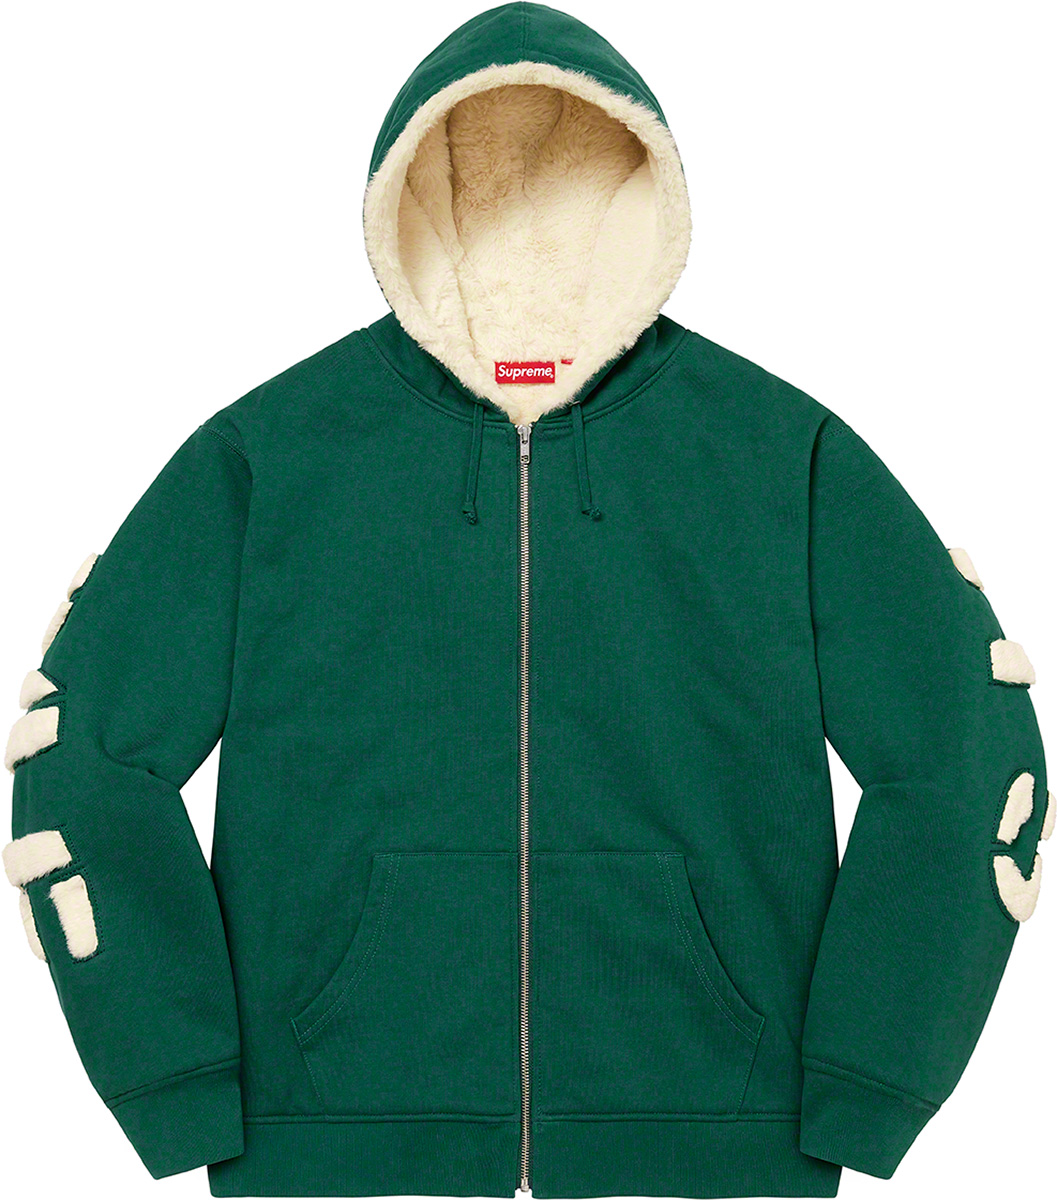 27,299円Supreme FauxFur Zip Up Hooded Sweatshirt